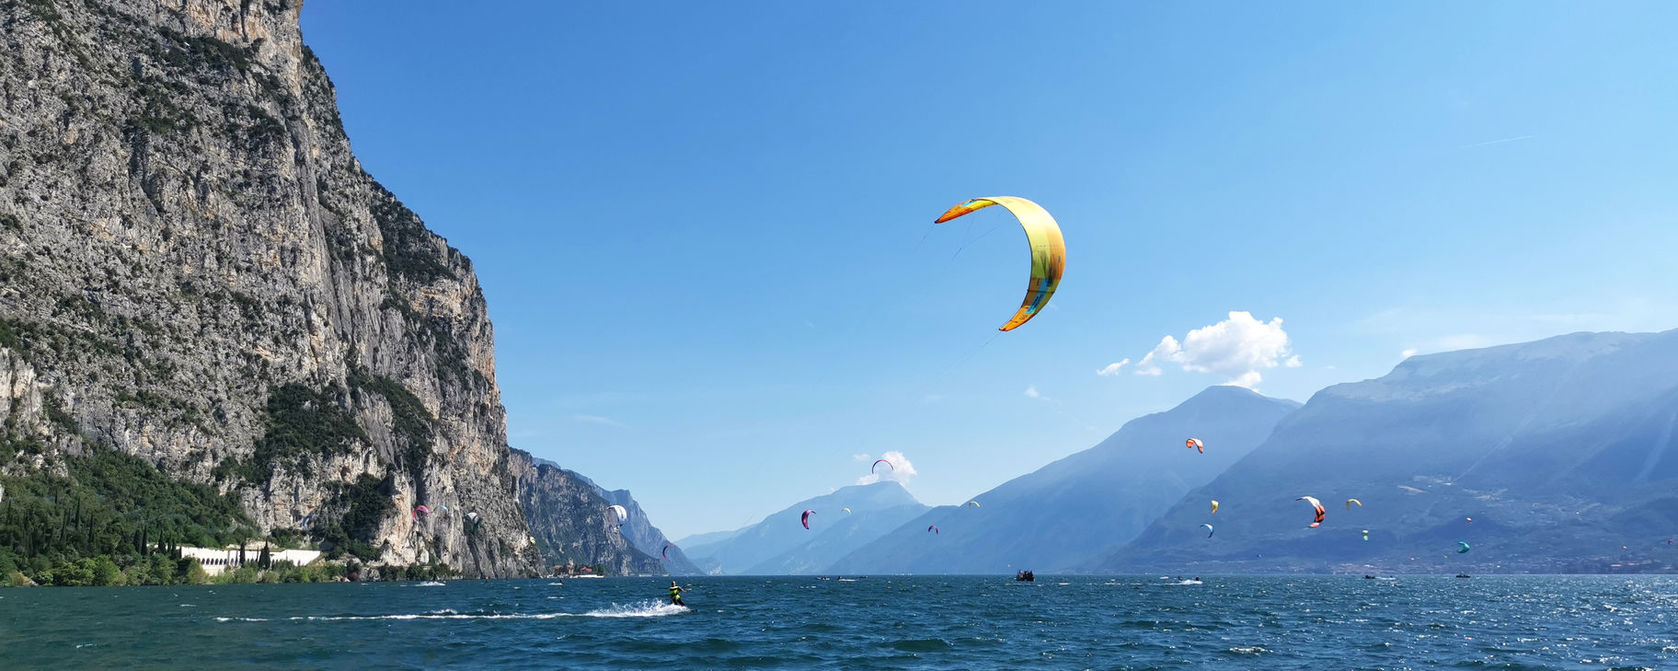 Kite equipment rental at Lake Garda